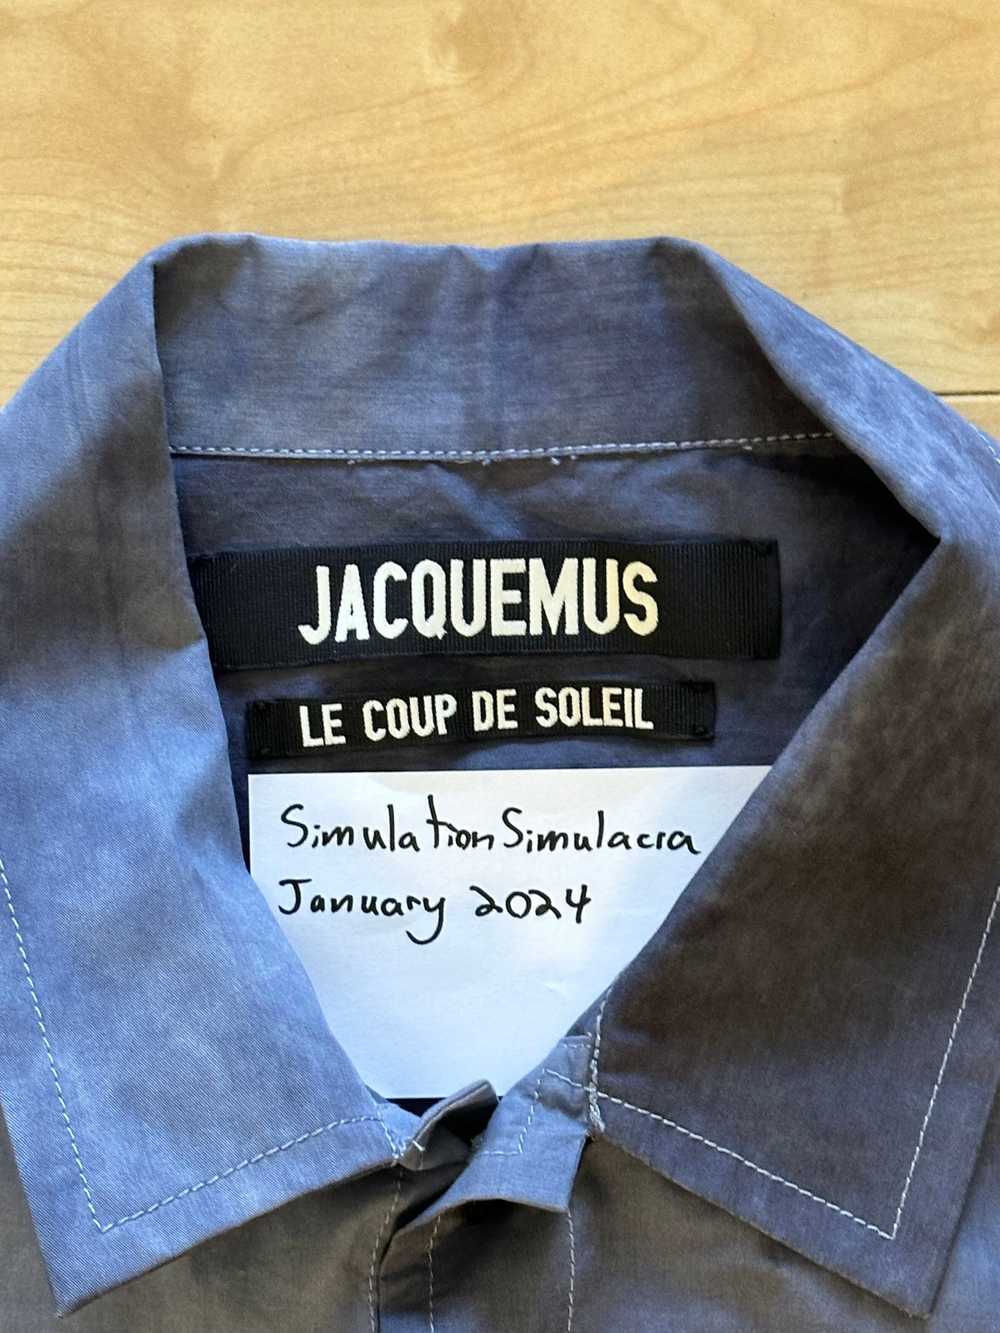 Jacquemus JACQUEMUS Le Blouson Valensole Jacket - image 2